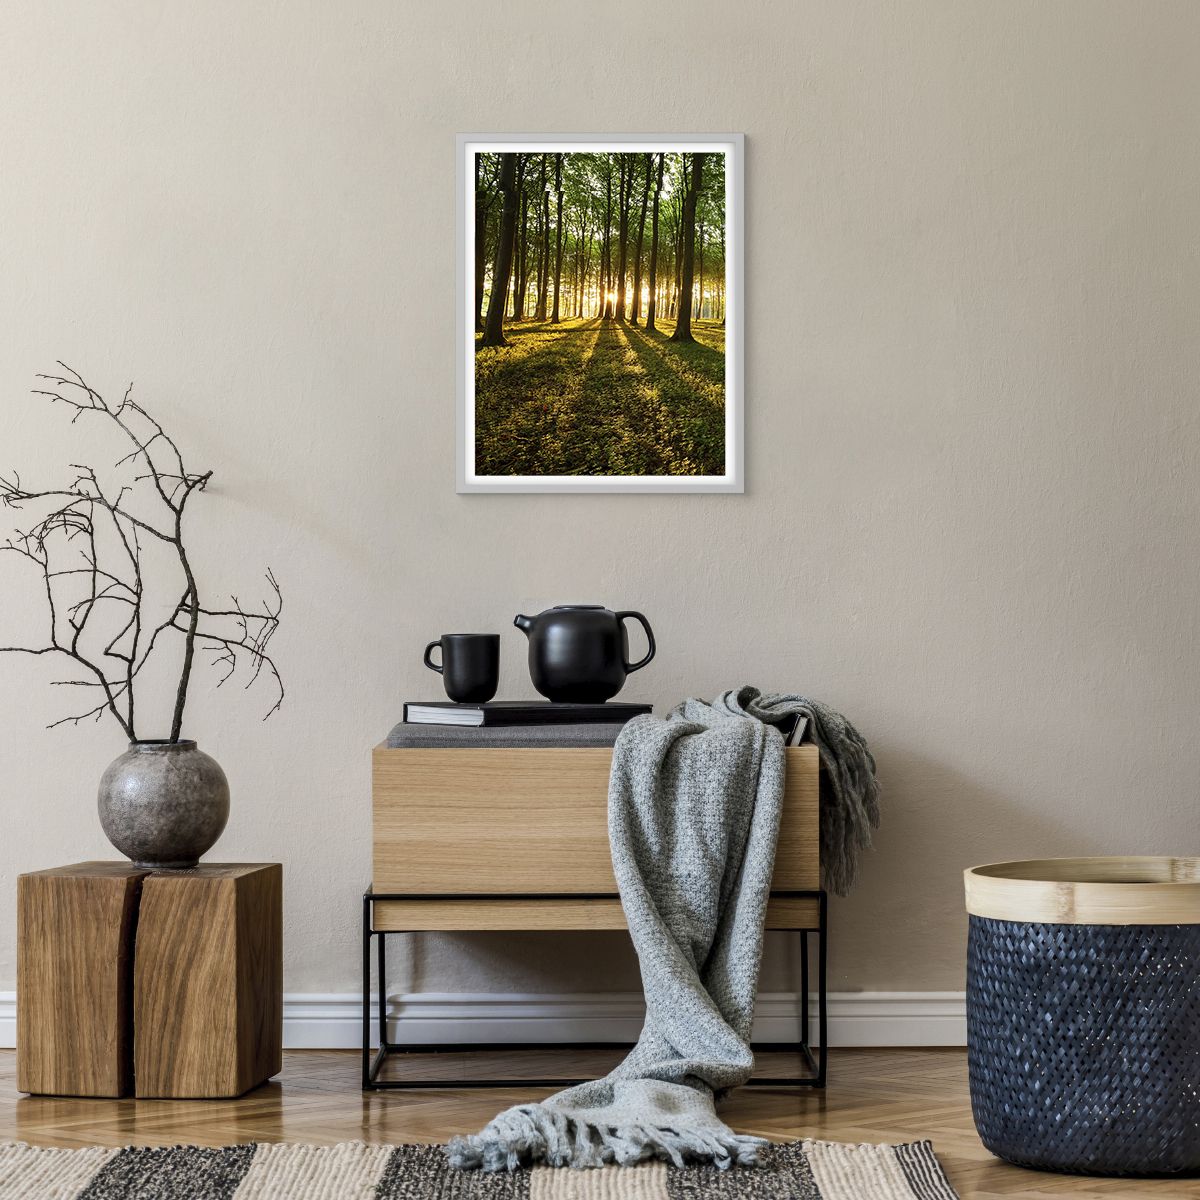 Poster in einem weißen Rahmen Landschaft, Poster in einem weißen Rahmen Wald, Poster in einem weißen Rahmen Natur, Poster in einem weißen Rahmen Bäume, Poster in einem weißen Rahmen Sonnenstrahlen